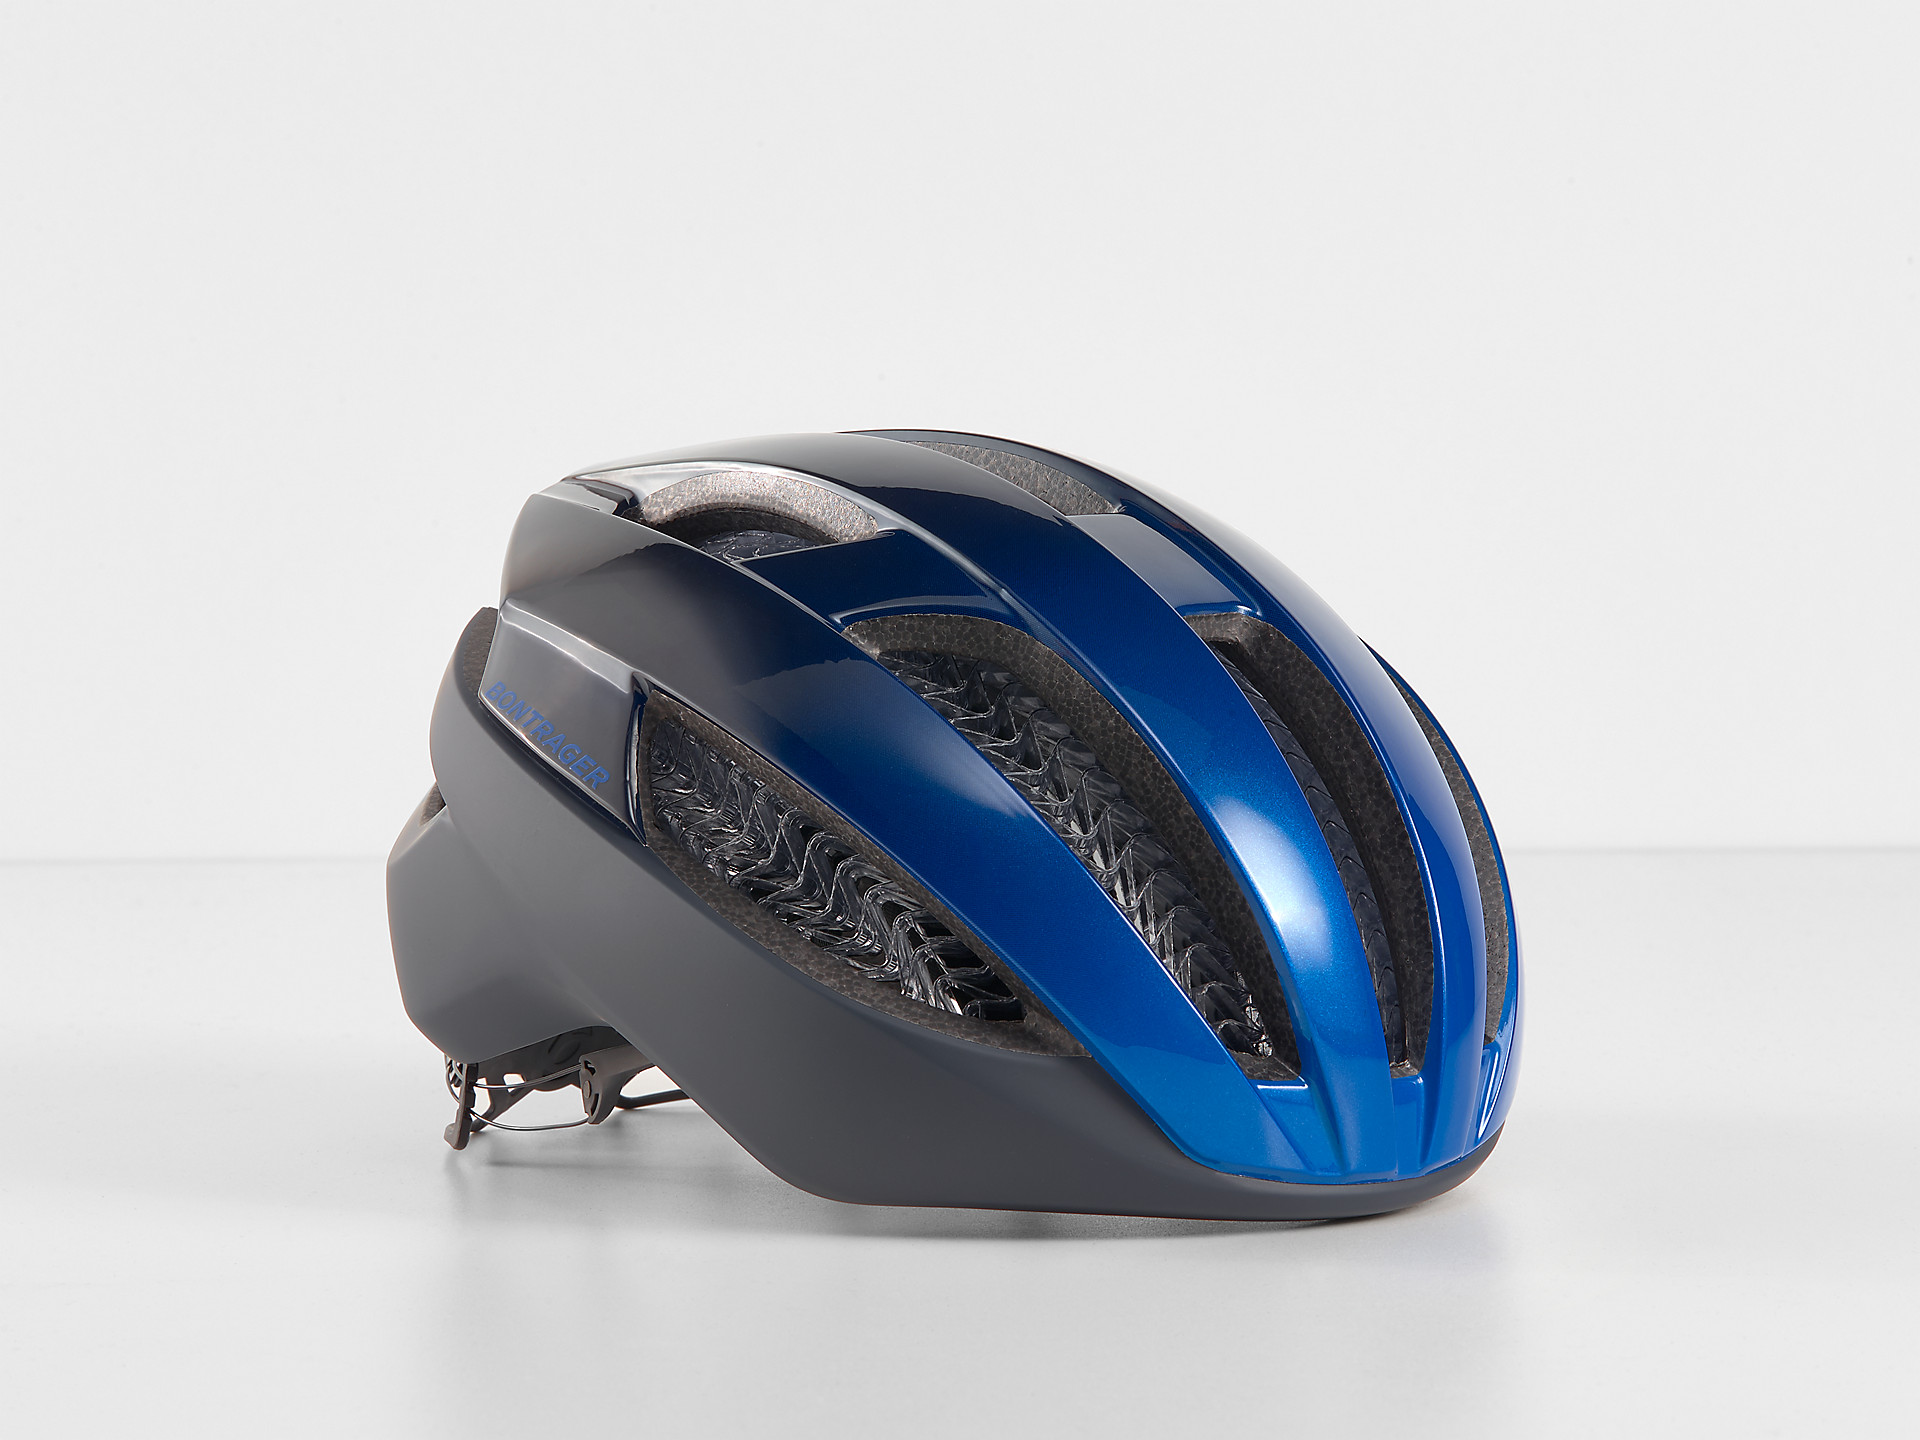 Bontrager bontrager cycle helmet 